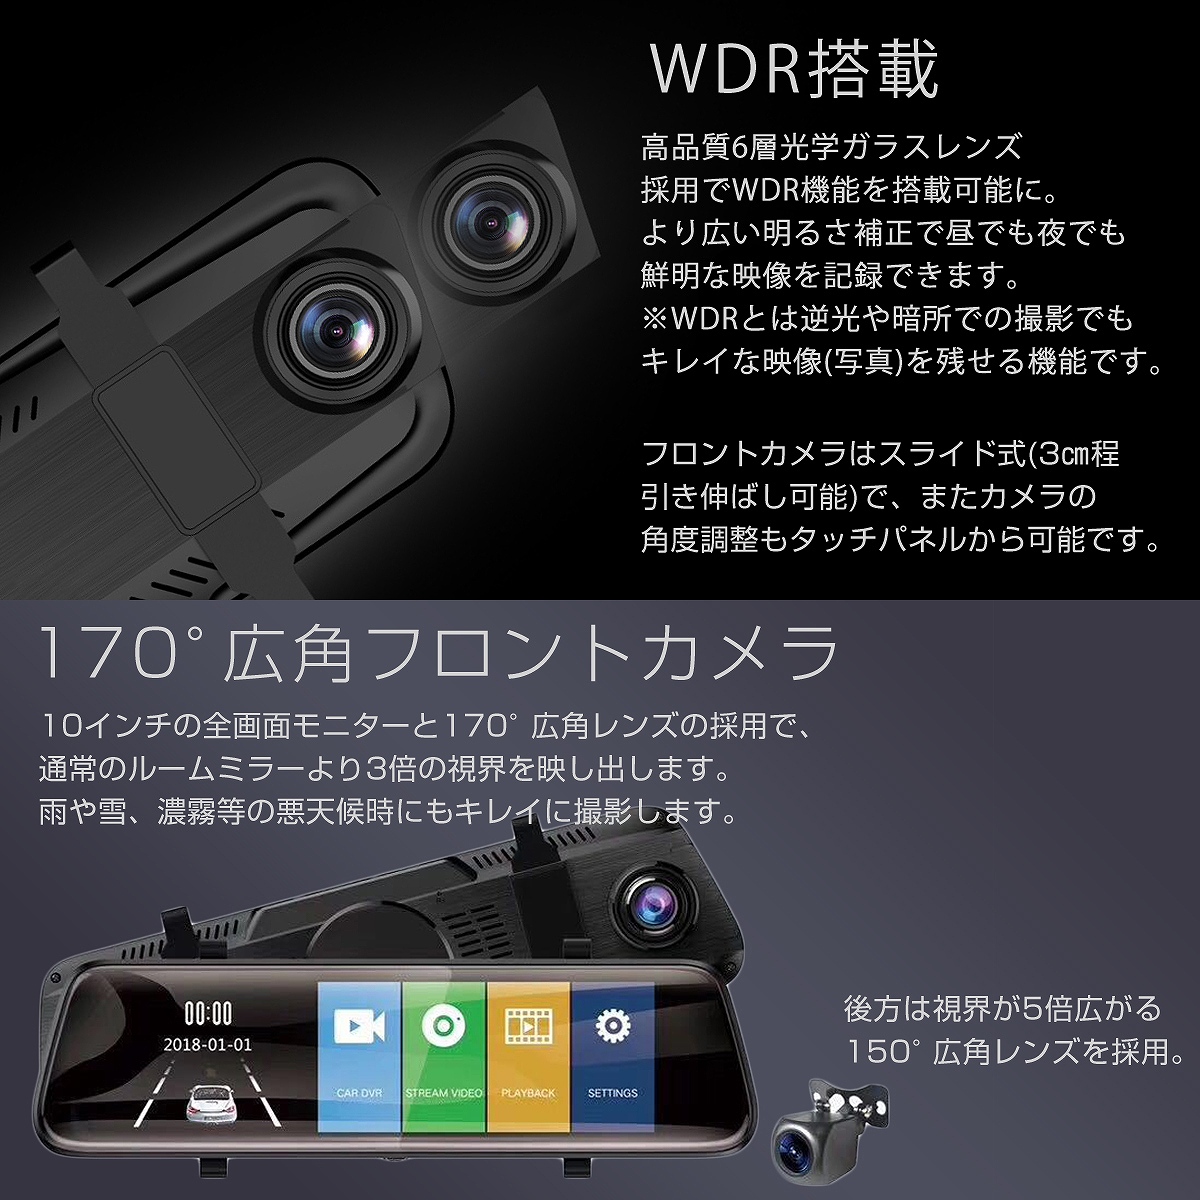 高品質爆買い DAIHATSU ミラー型 SDカード64GB同梱モデル あおり運転対策 FHD 10インチ全画面モニター ソニー製レンズ タッチパネル 170度 バック YRV 2022年モデル ドライブレコーダー 2K 1296P 200万画素 前後カメラ 全国無料安い